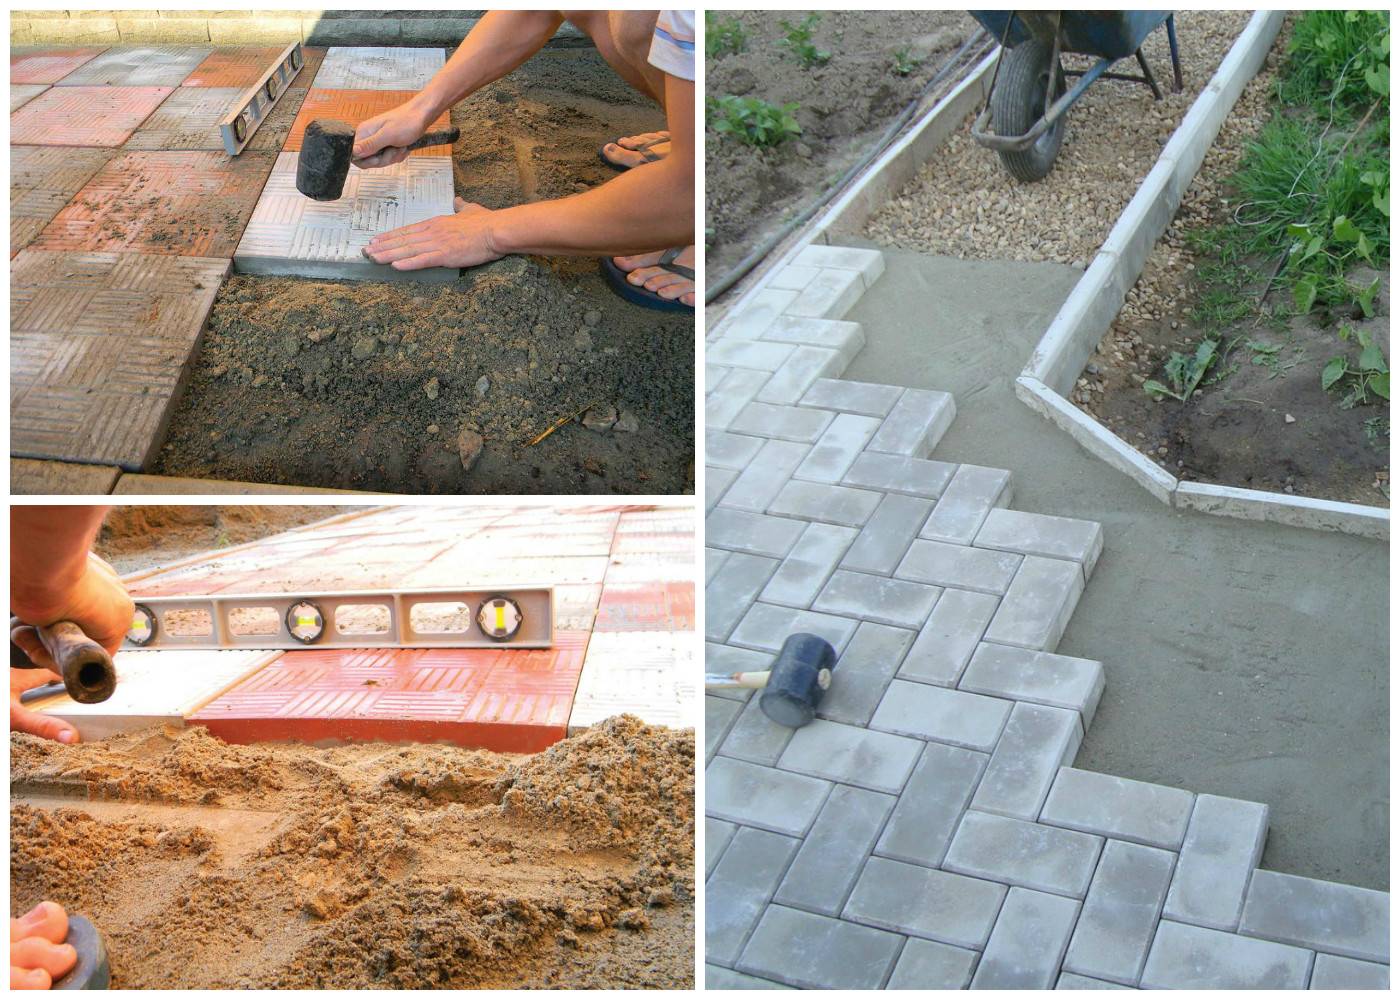 Укладка тротуарной плитки своими руками – инструкция, технология монтажа на песок, бетонное основание, обработка + фото-видео